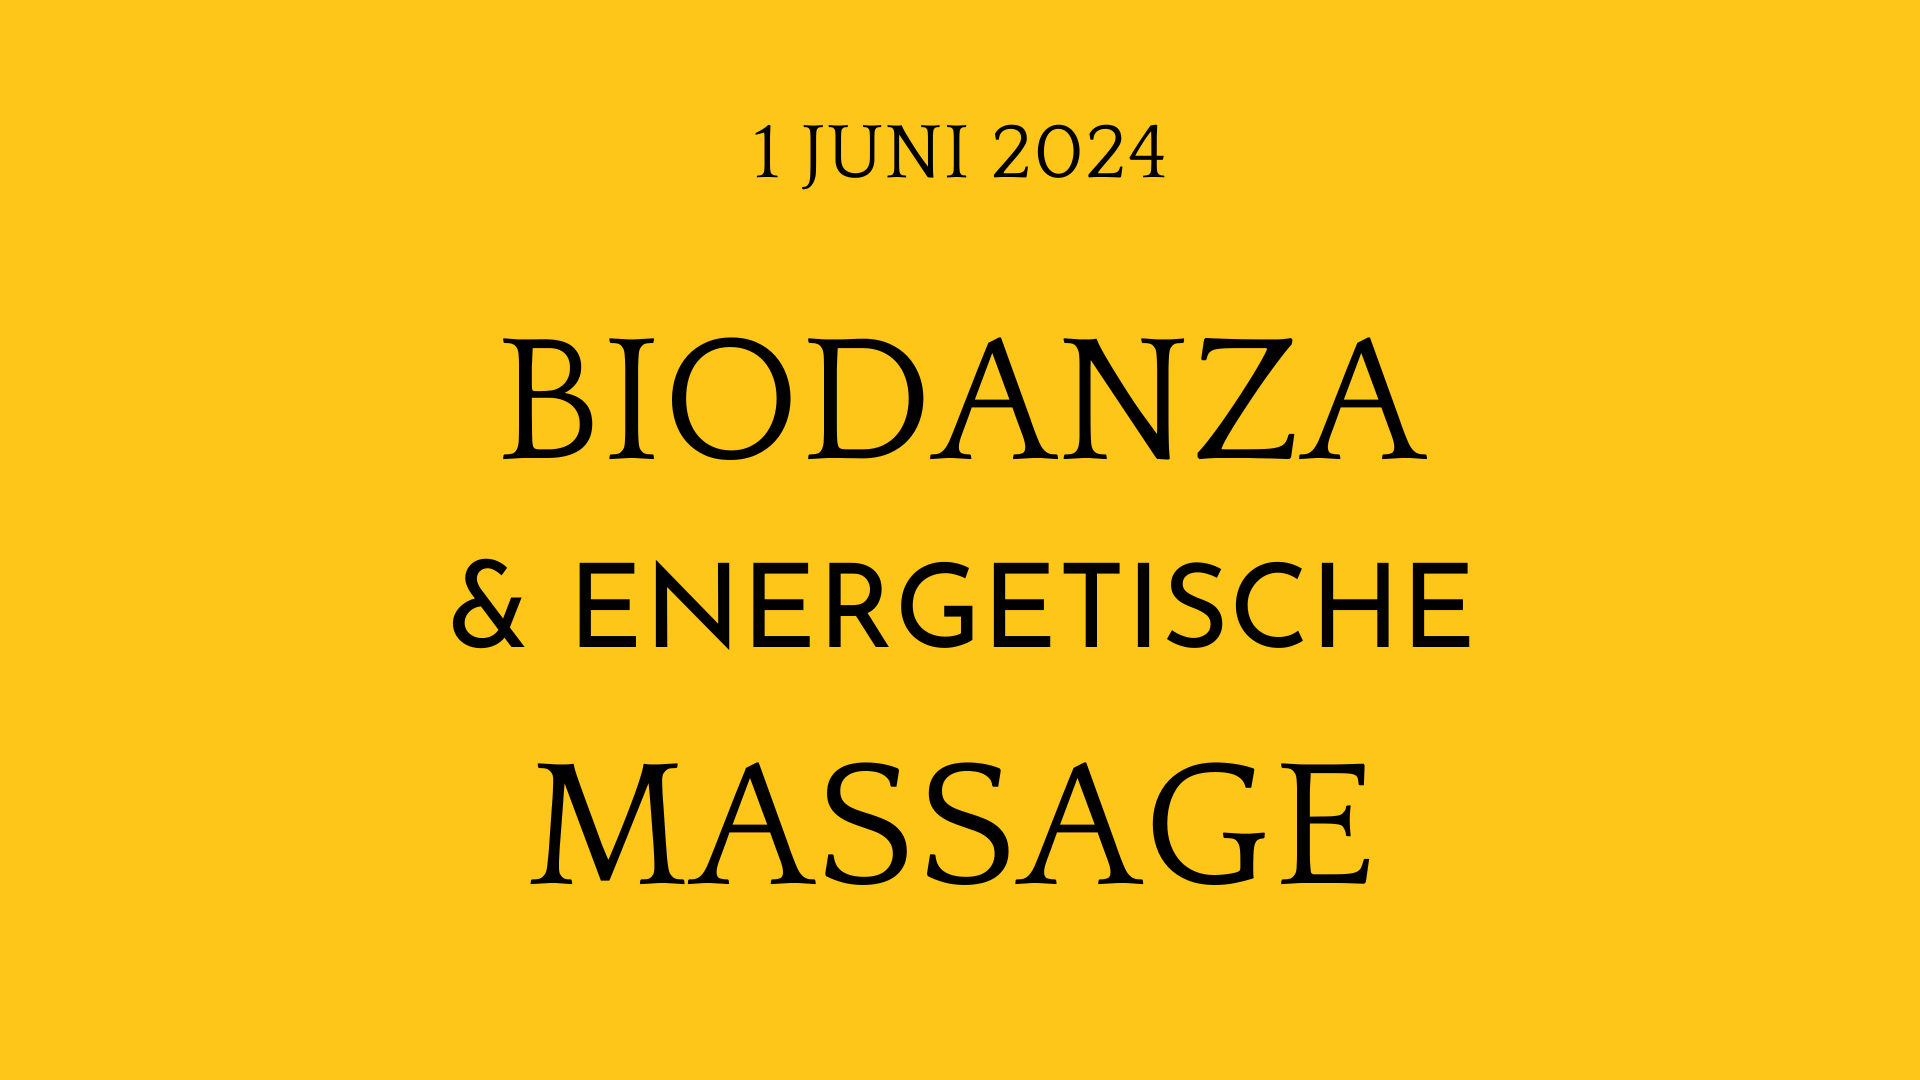 Biodanza en energetische Massage